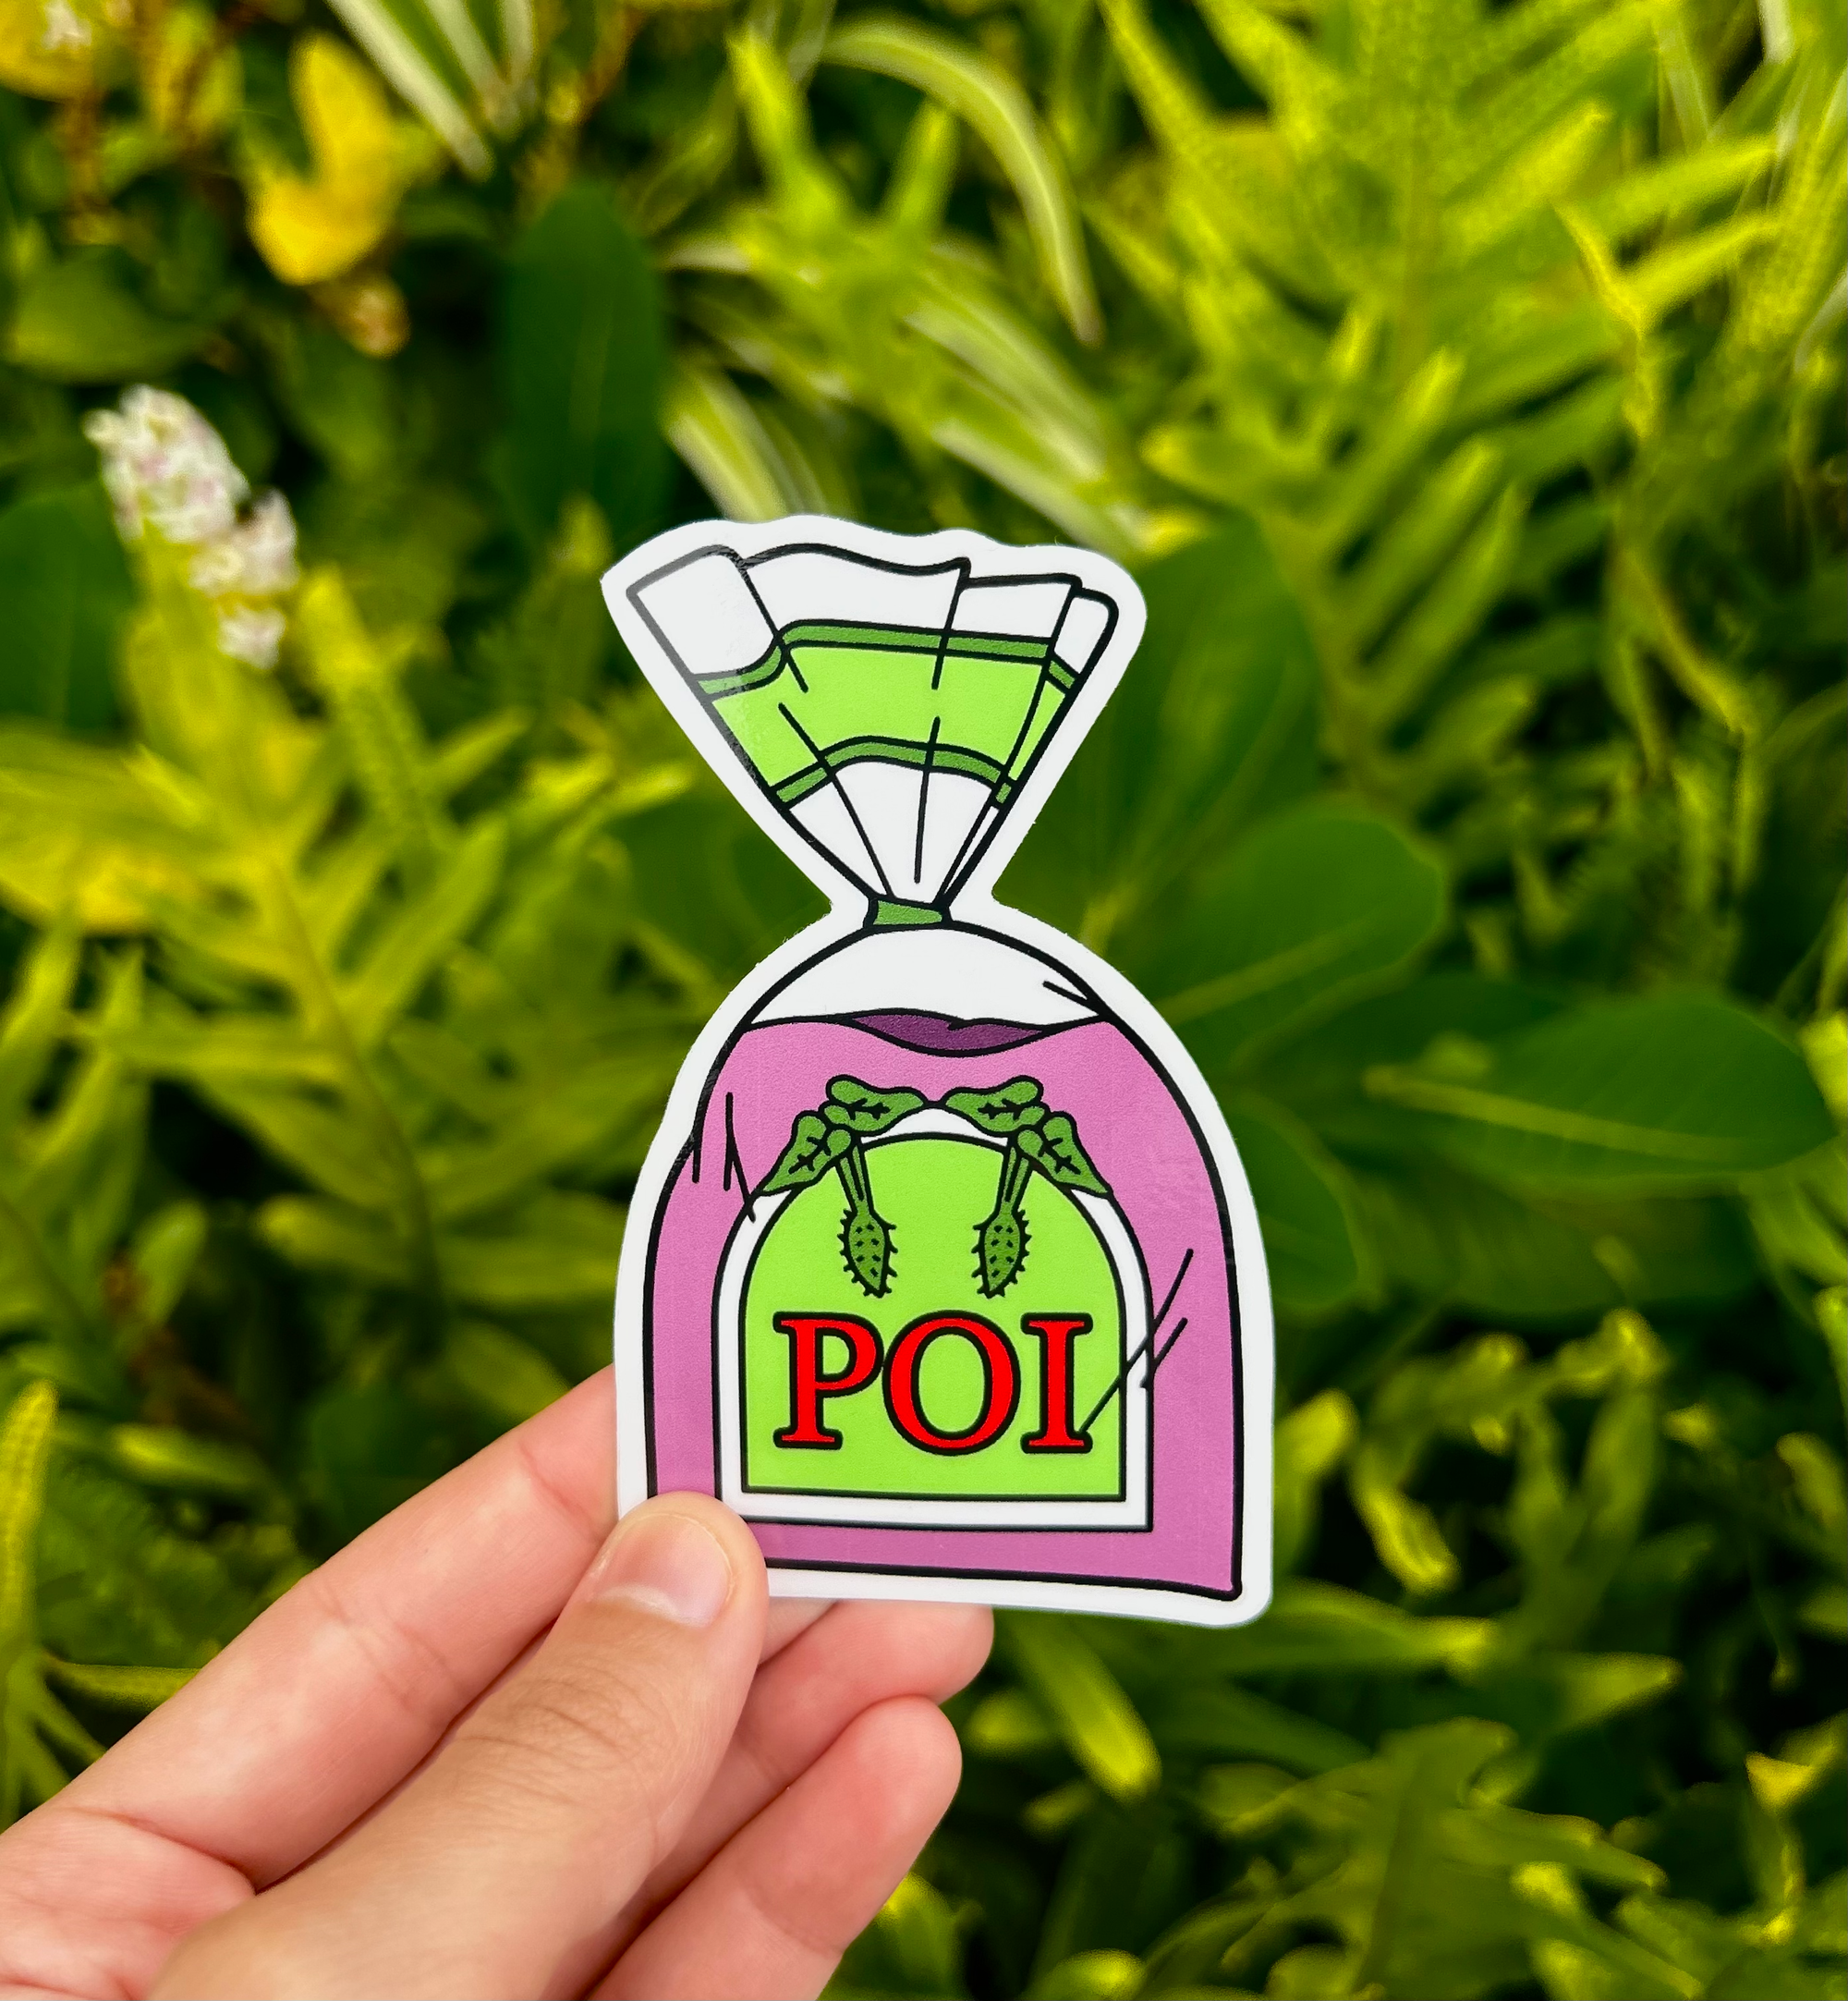 Pop-Up Mākeke - Mahea Leah - Bags of Poi Sticker